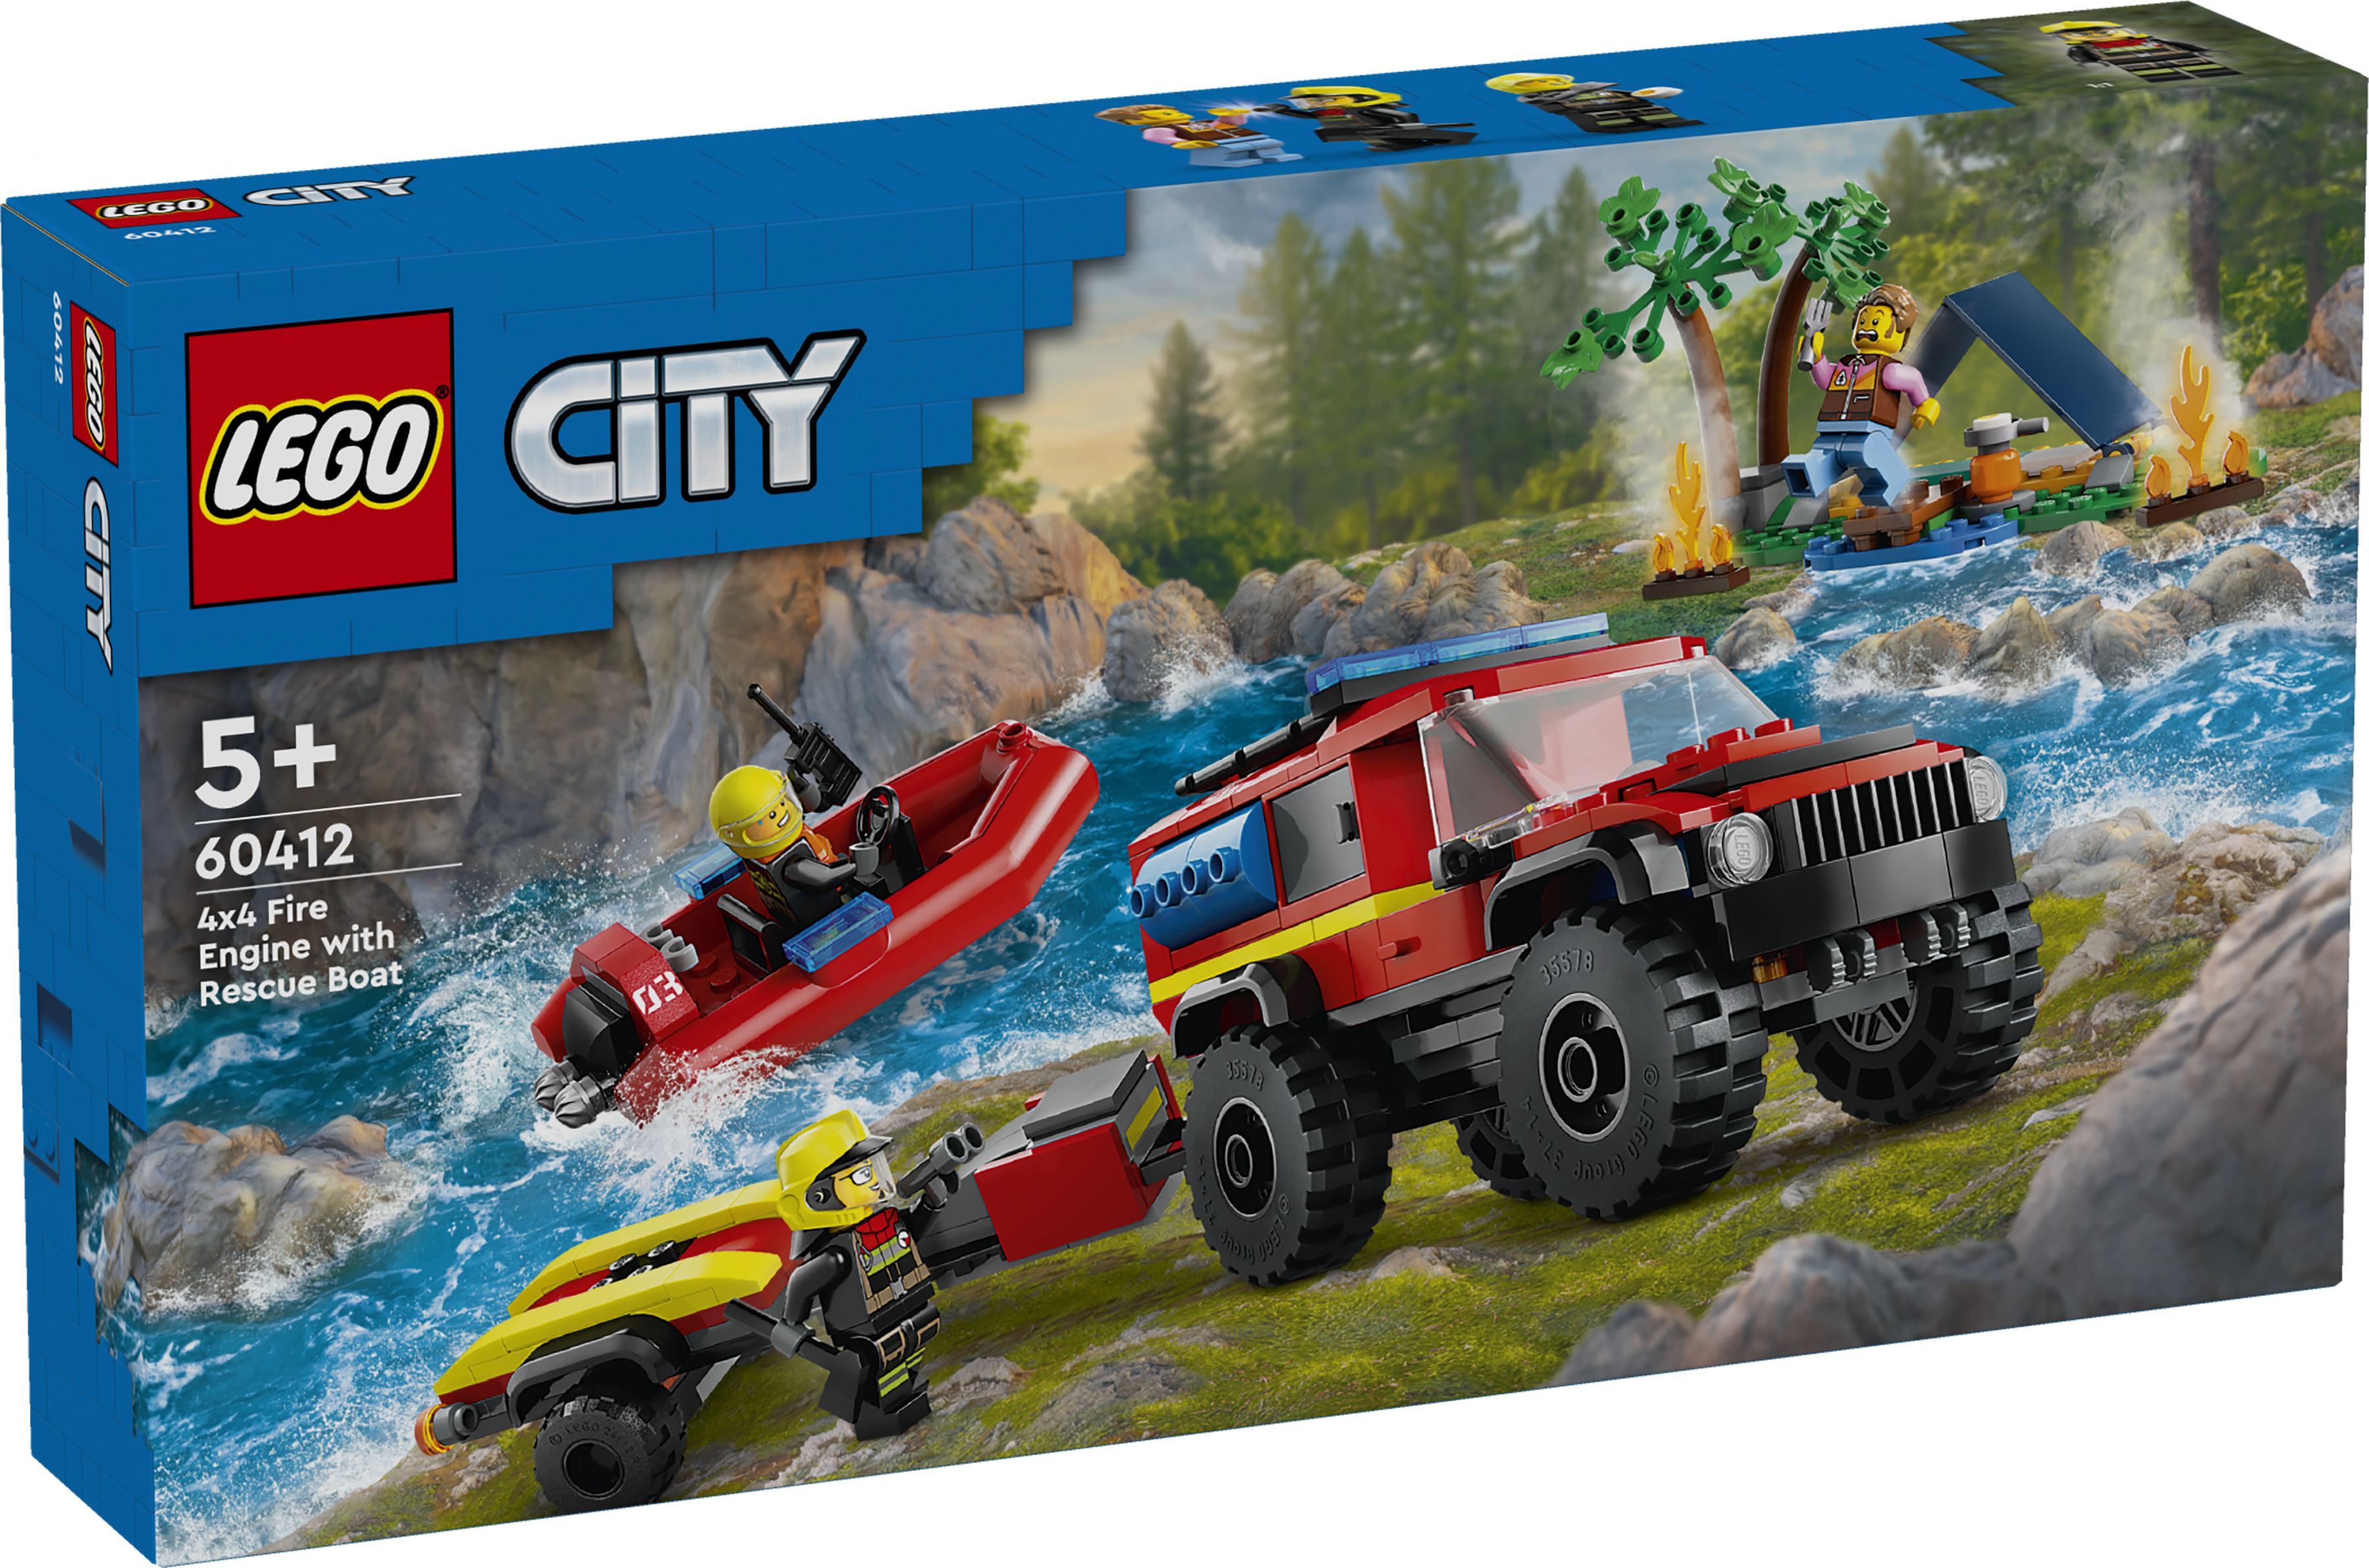 LEGO City 60412 Feuerwehrgeländewagen mit Rettungsboot LEGO_60412_box1_v29.jpg